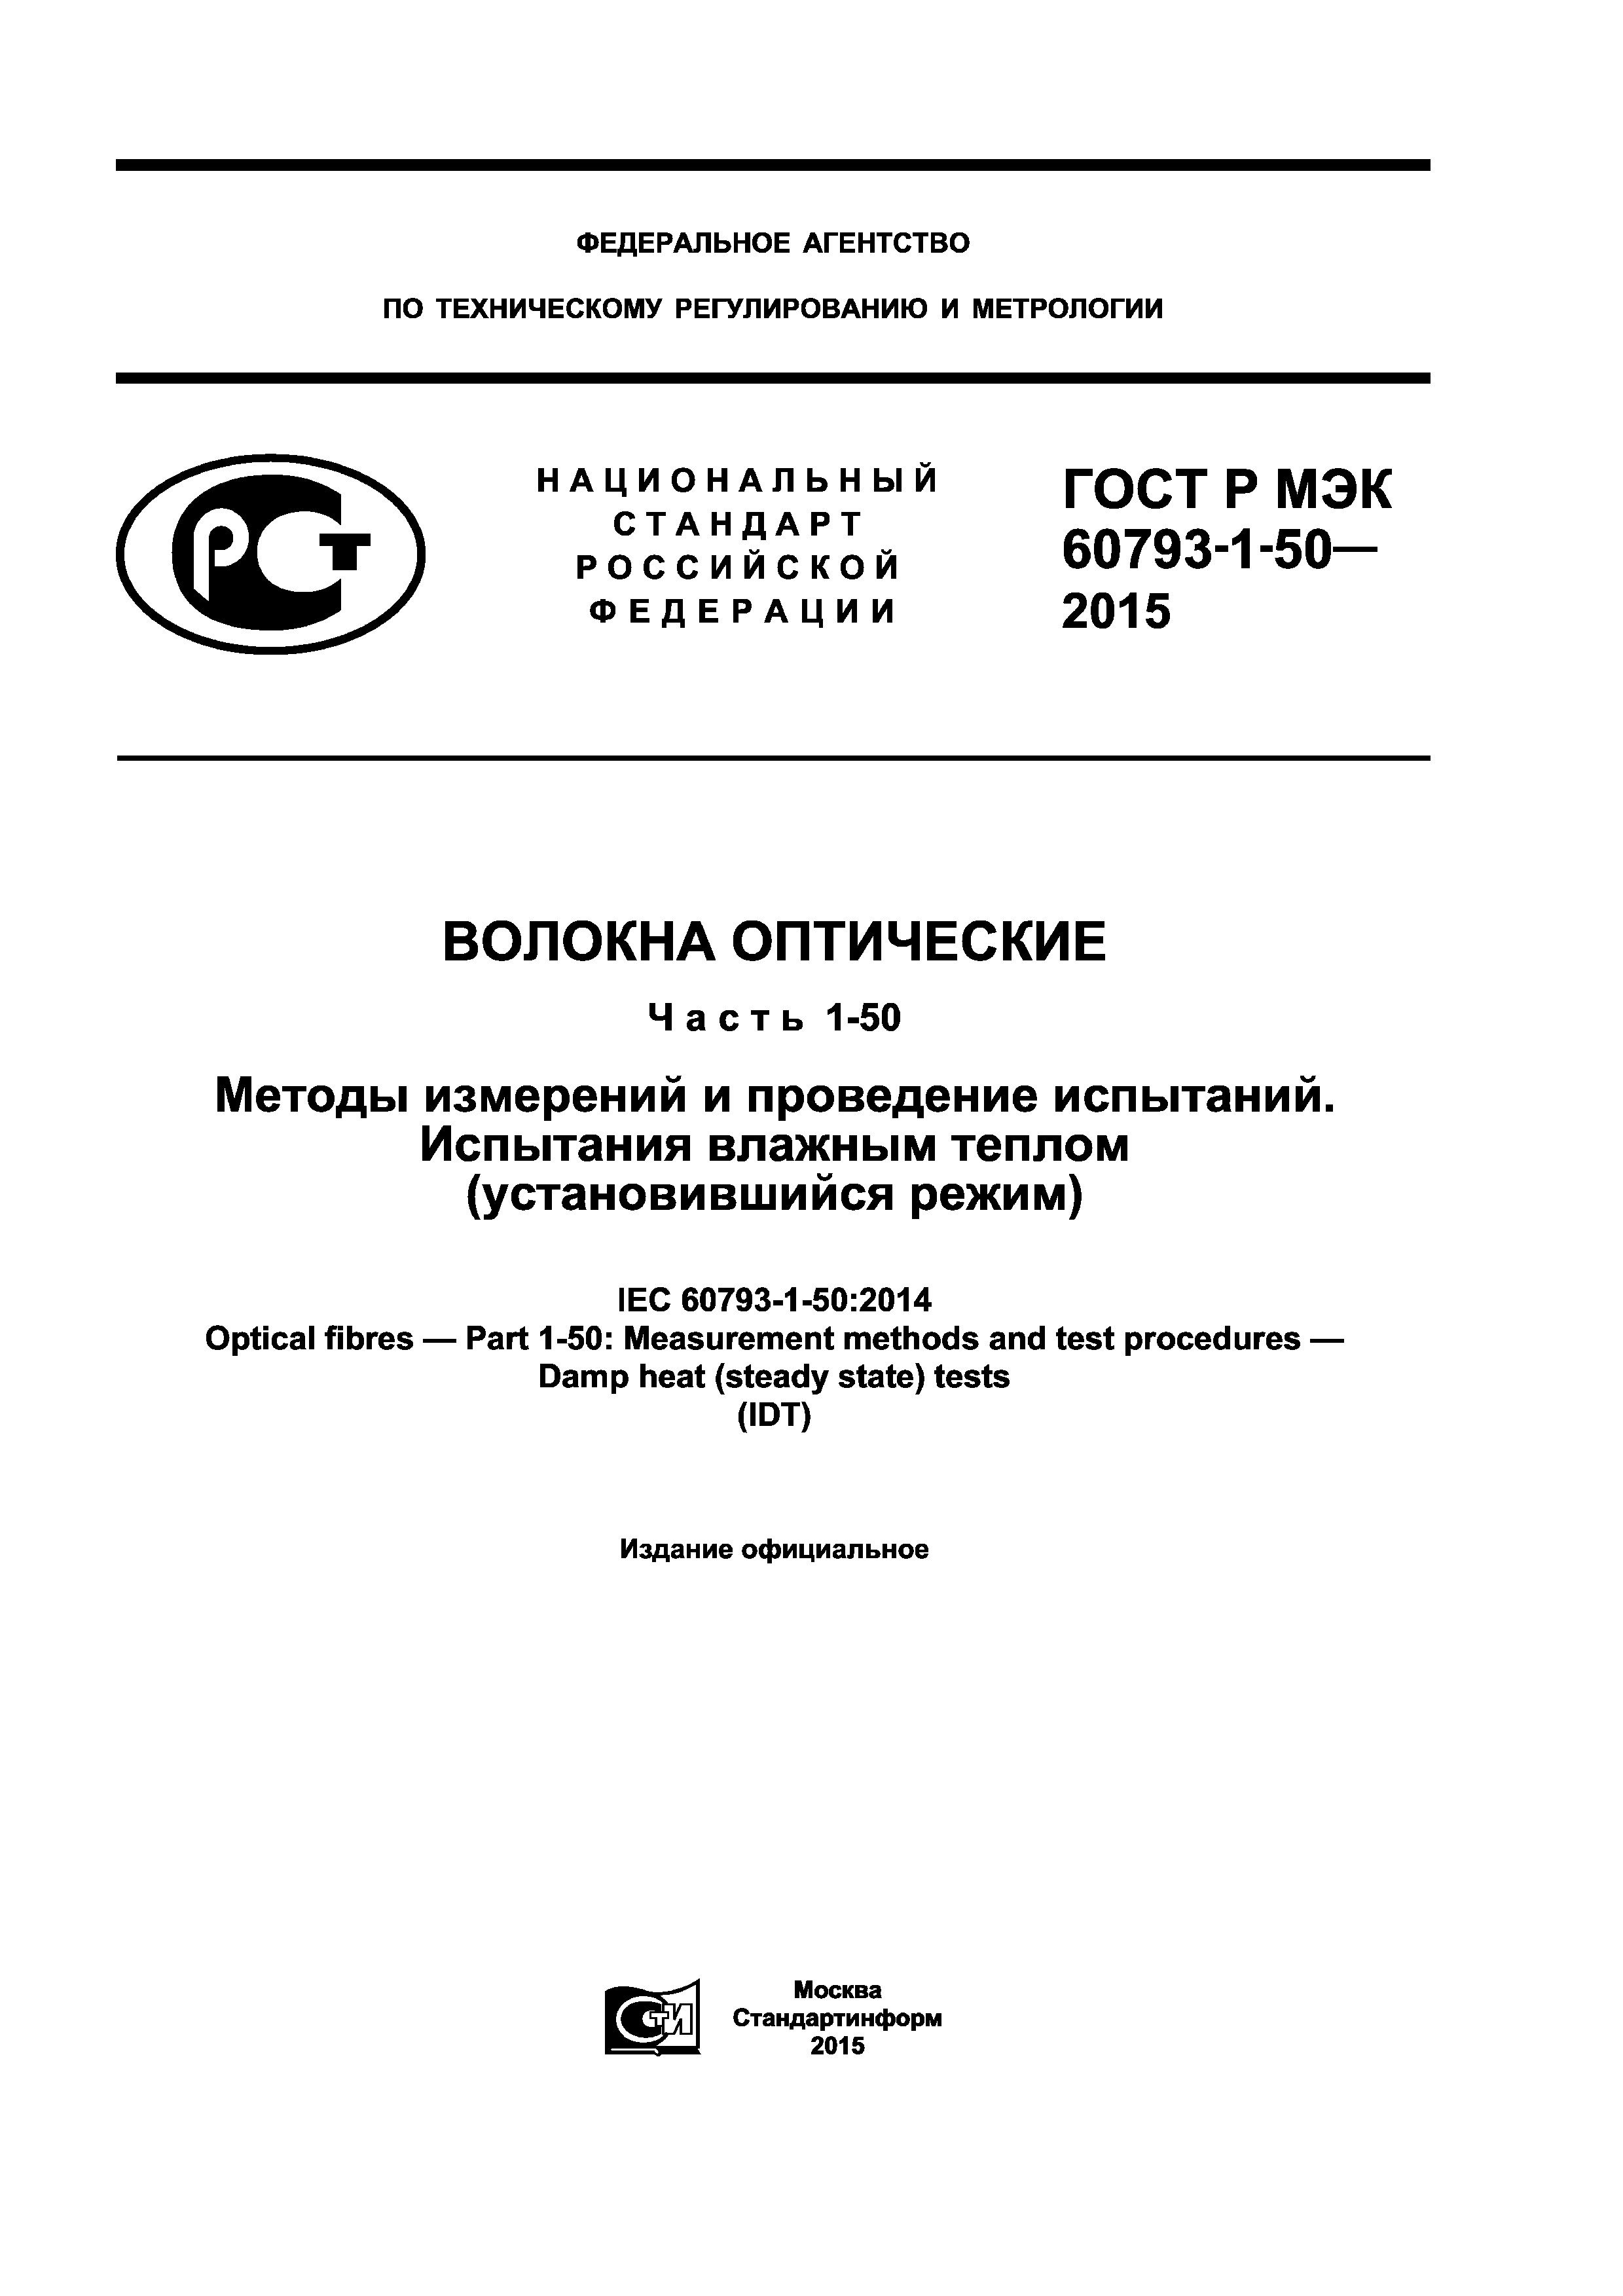 ГОСТ Р МЭК 60793-1-50-2015